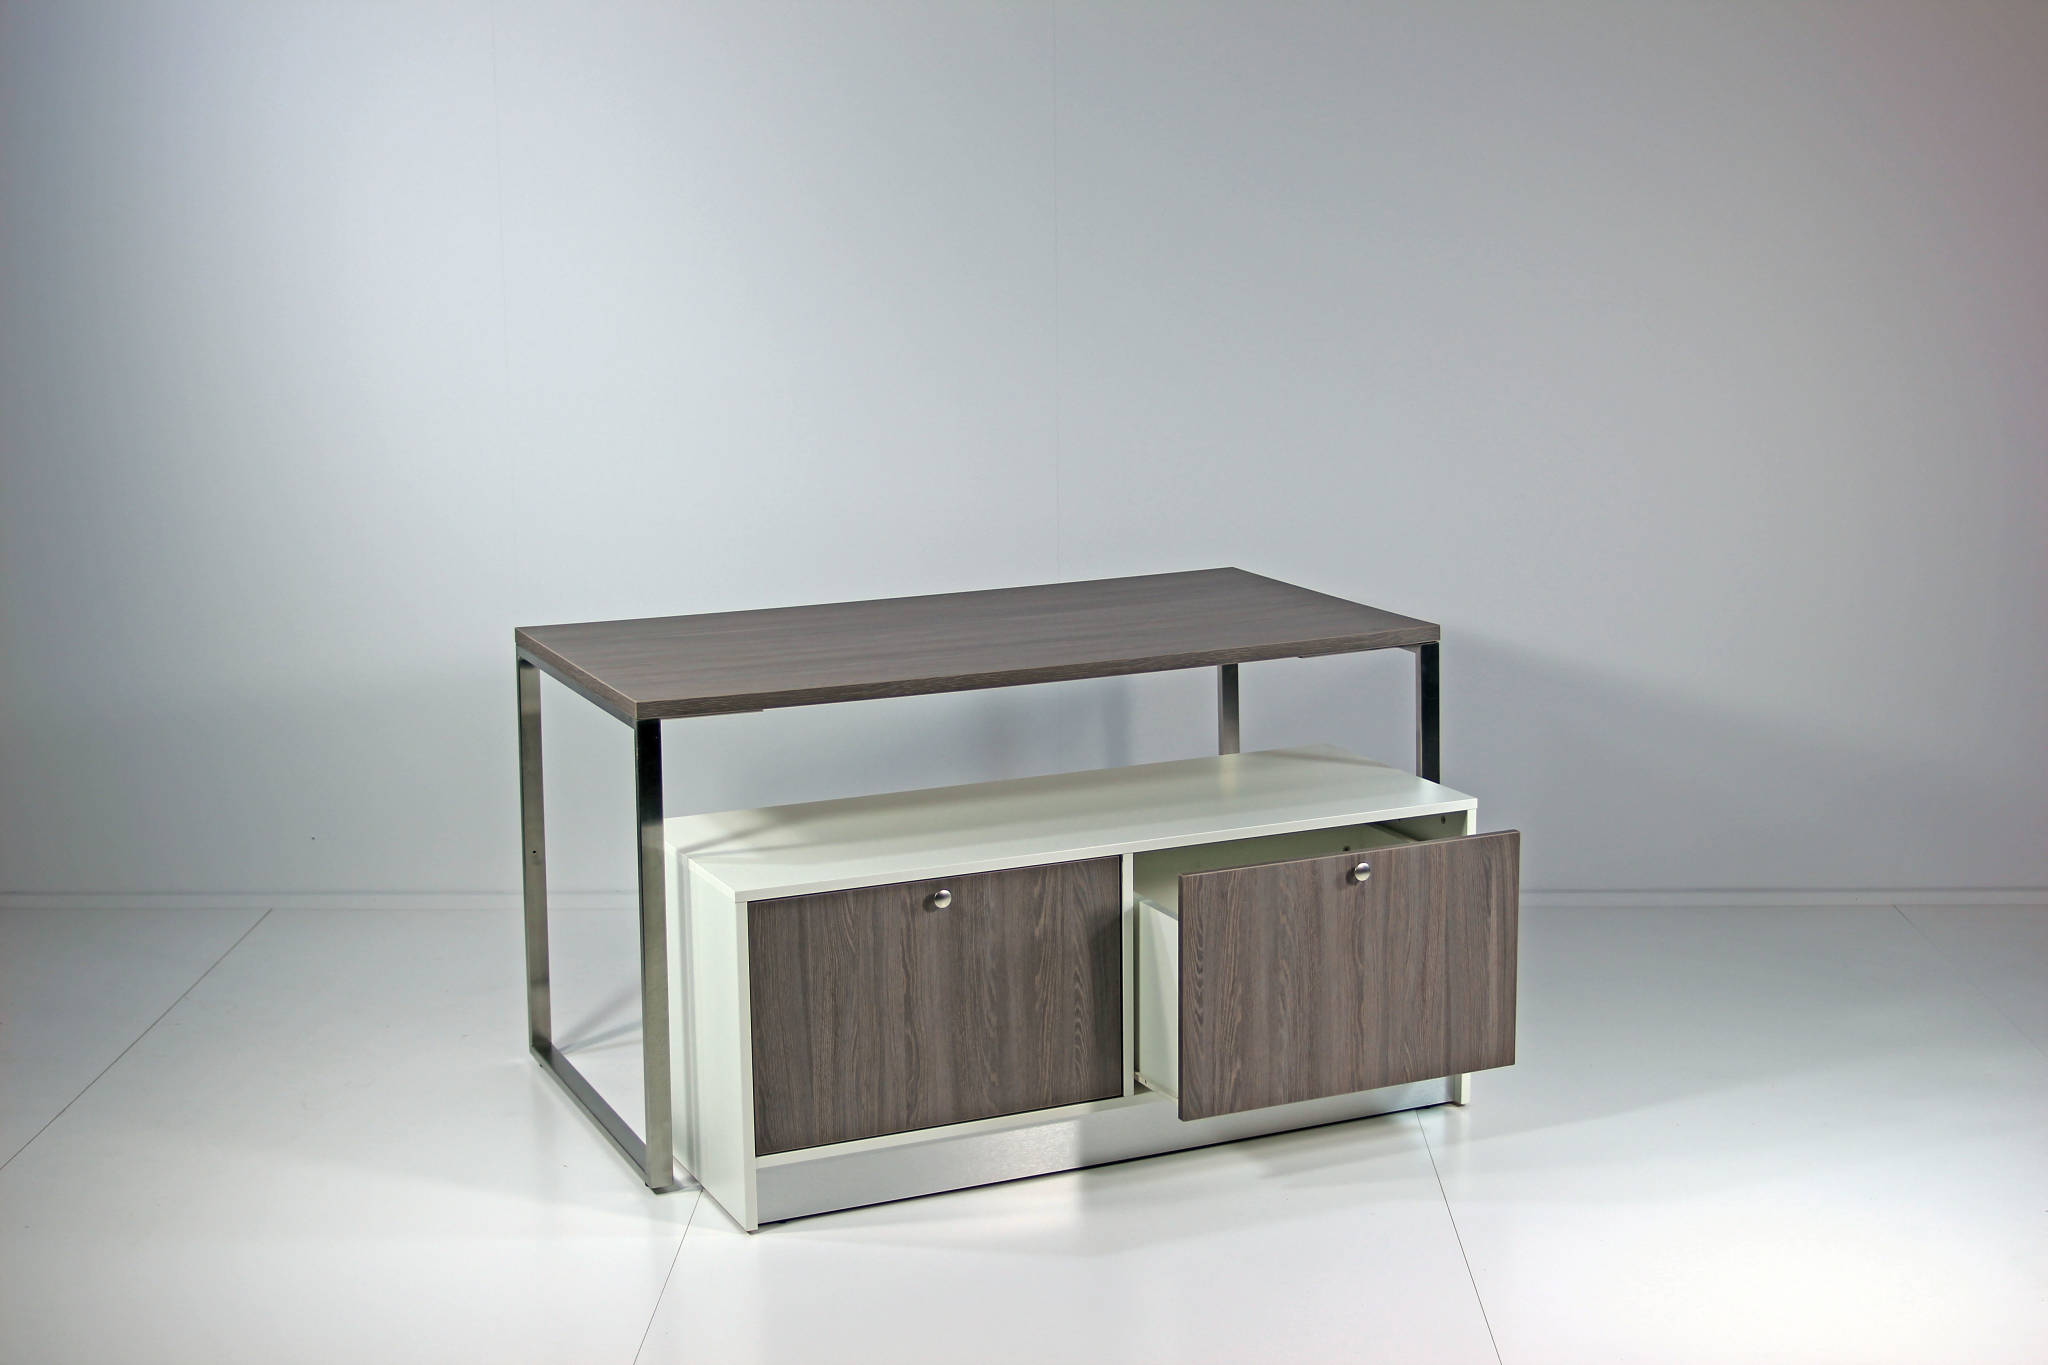 Salgsborde / oplægsborde - kombinere det store bord med lager / depot møblet.